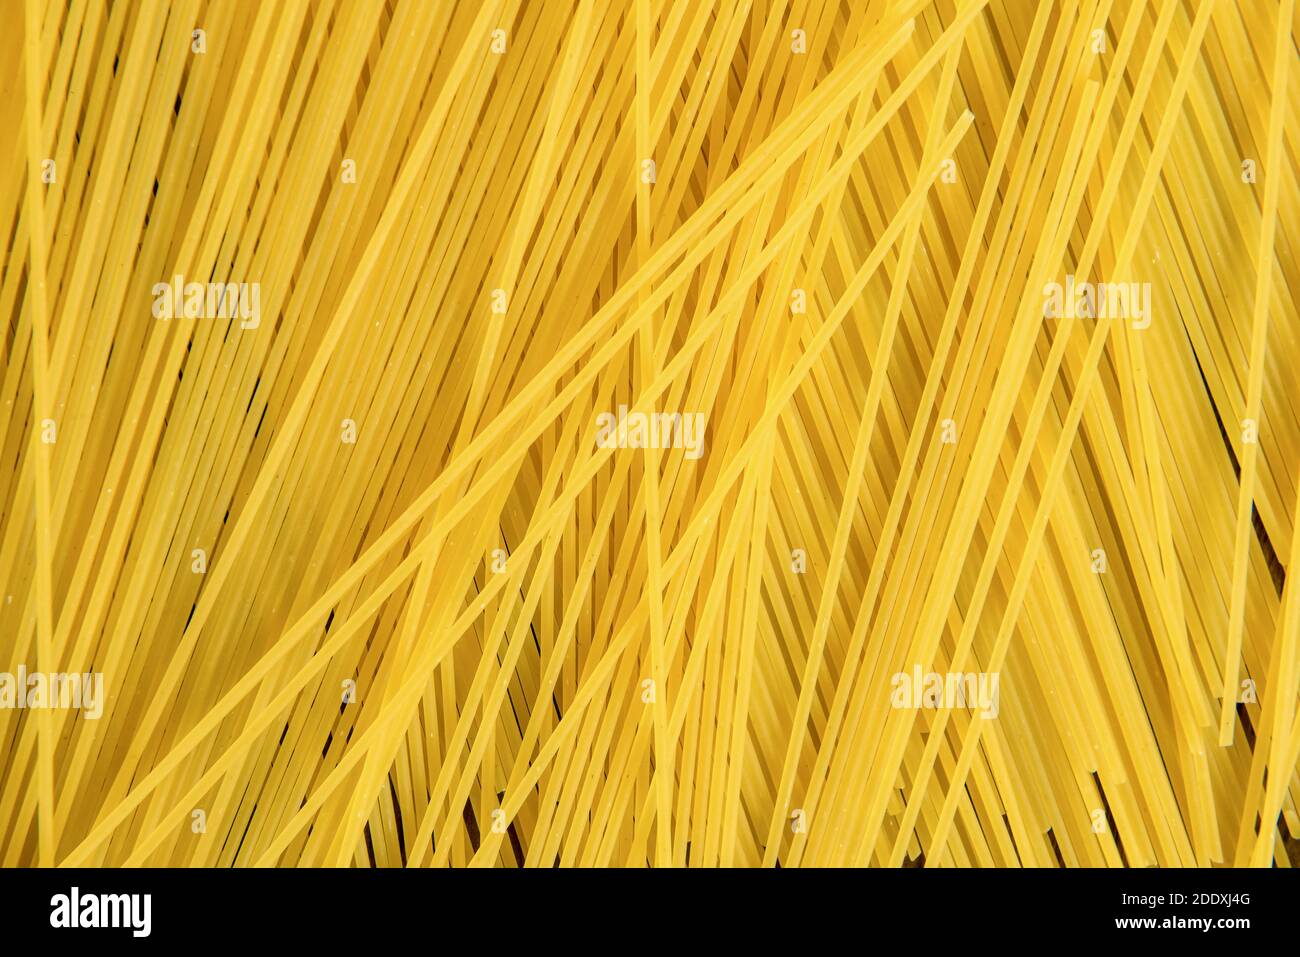 Gelbe ungekochte Nudel rohe Spaghetti Pasta Vorbereitung für das Essen Kochen, Draufsicht Stockfoto